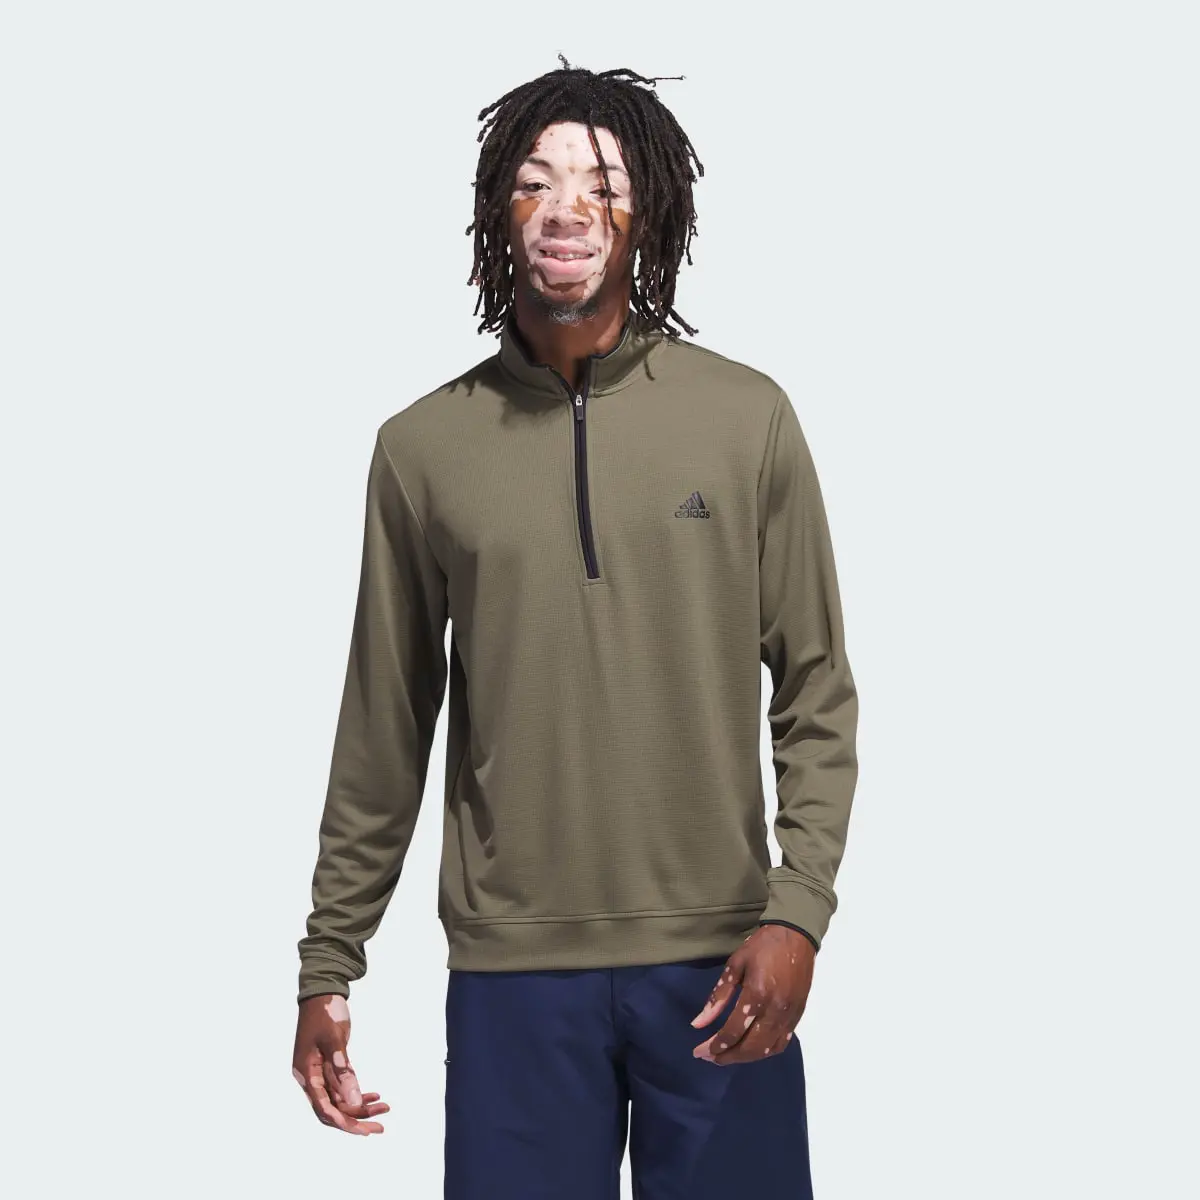 Adidas Quarter-Zip Pullover. 2